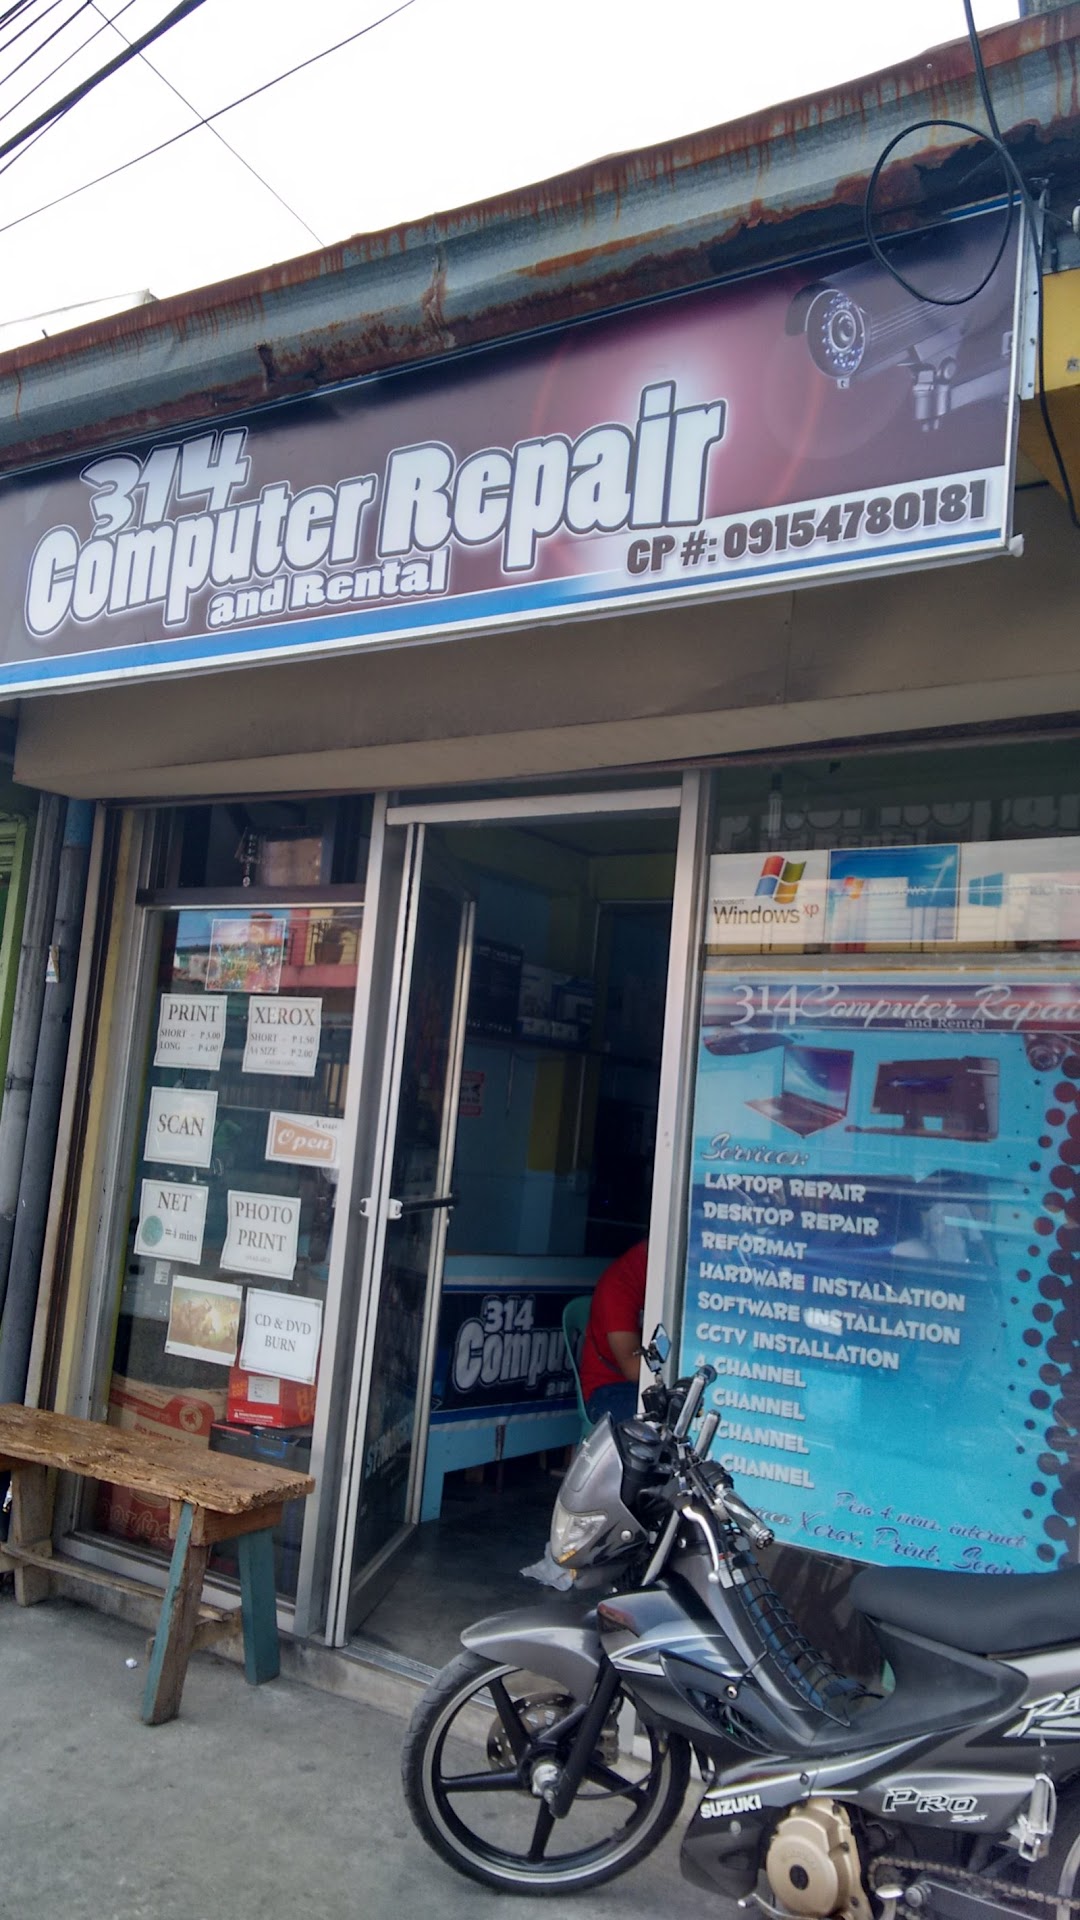 314 Computer Repair and Rental